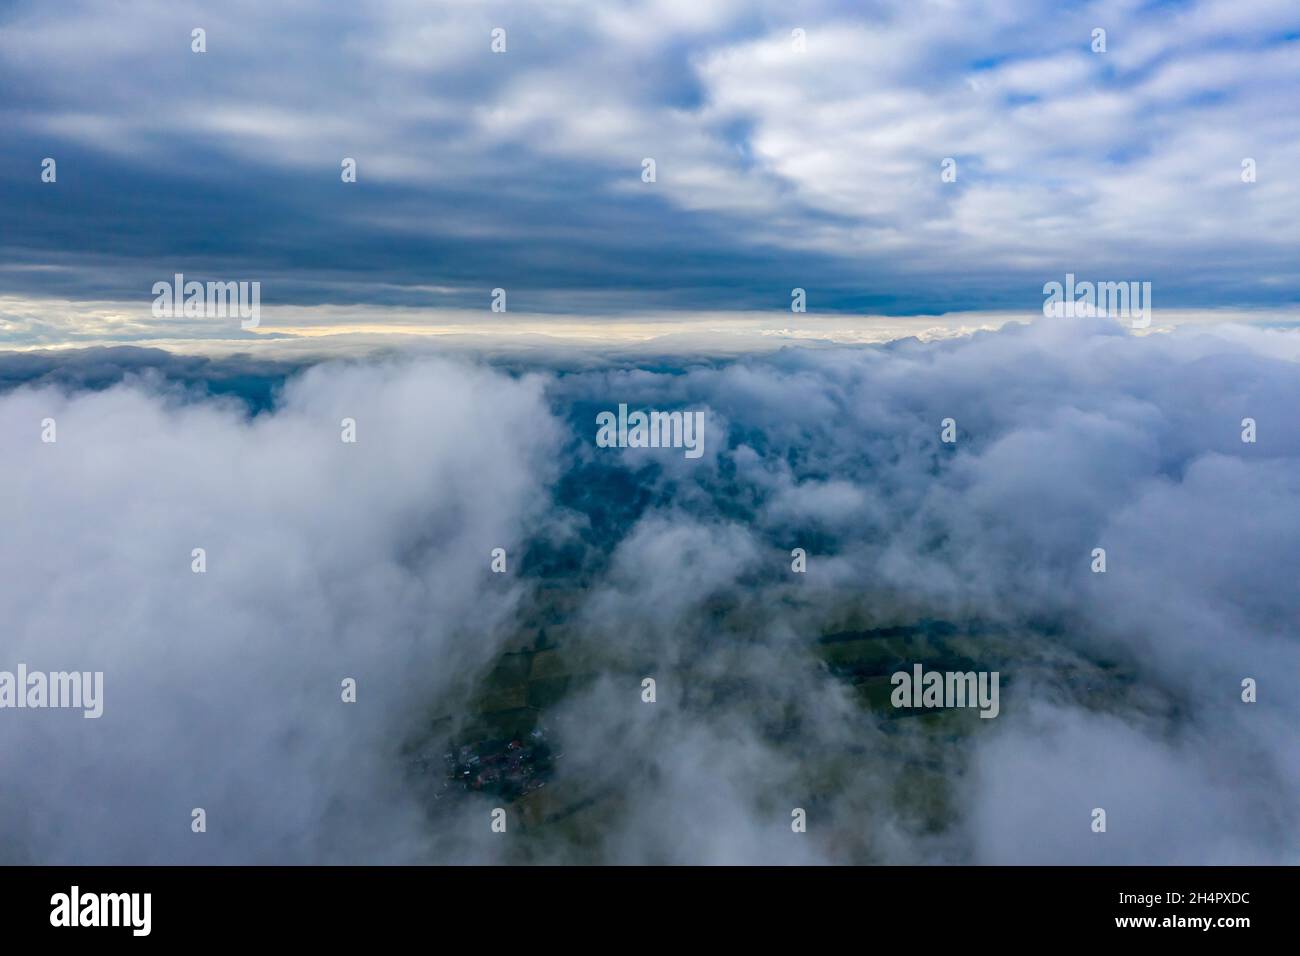 Wolken von oben gefilmt / Clouds with Drone from above Stock Photo